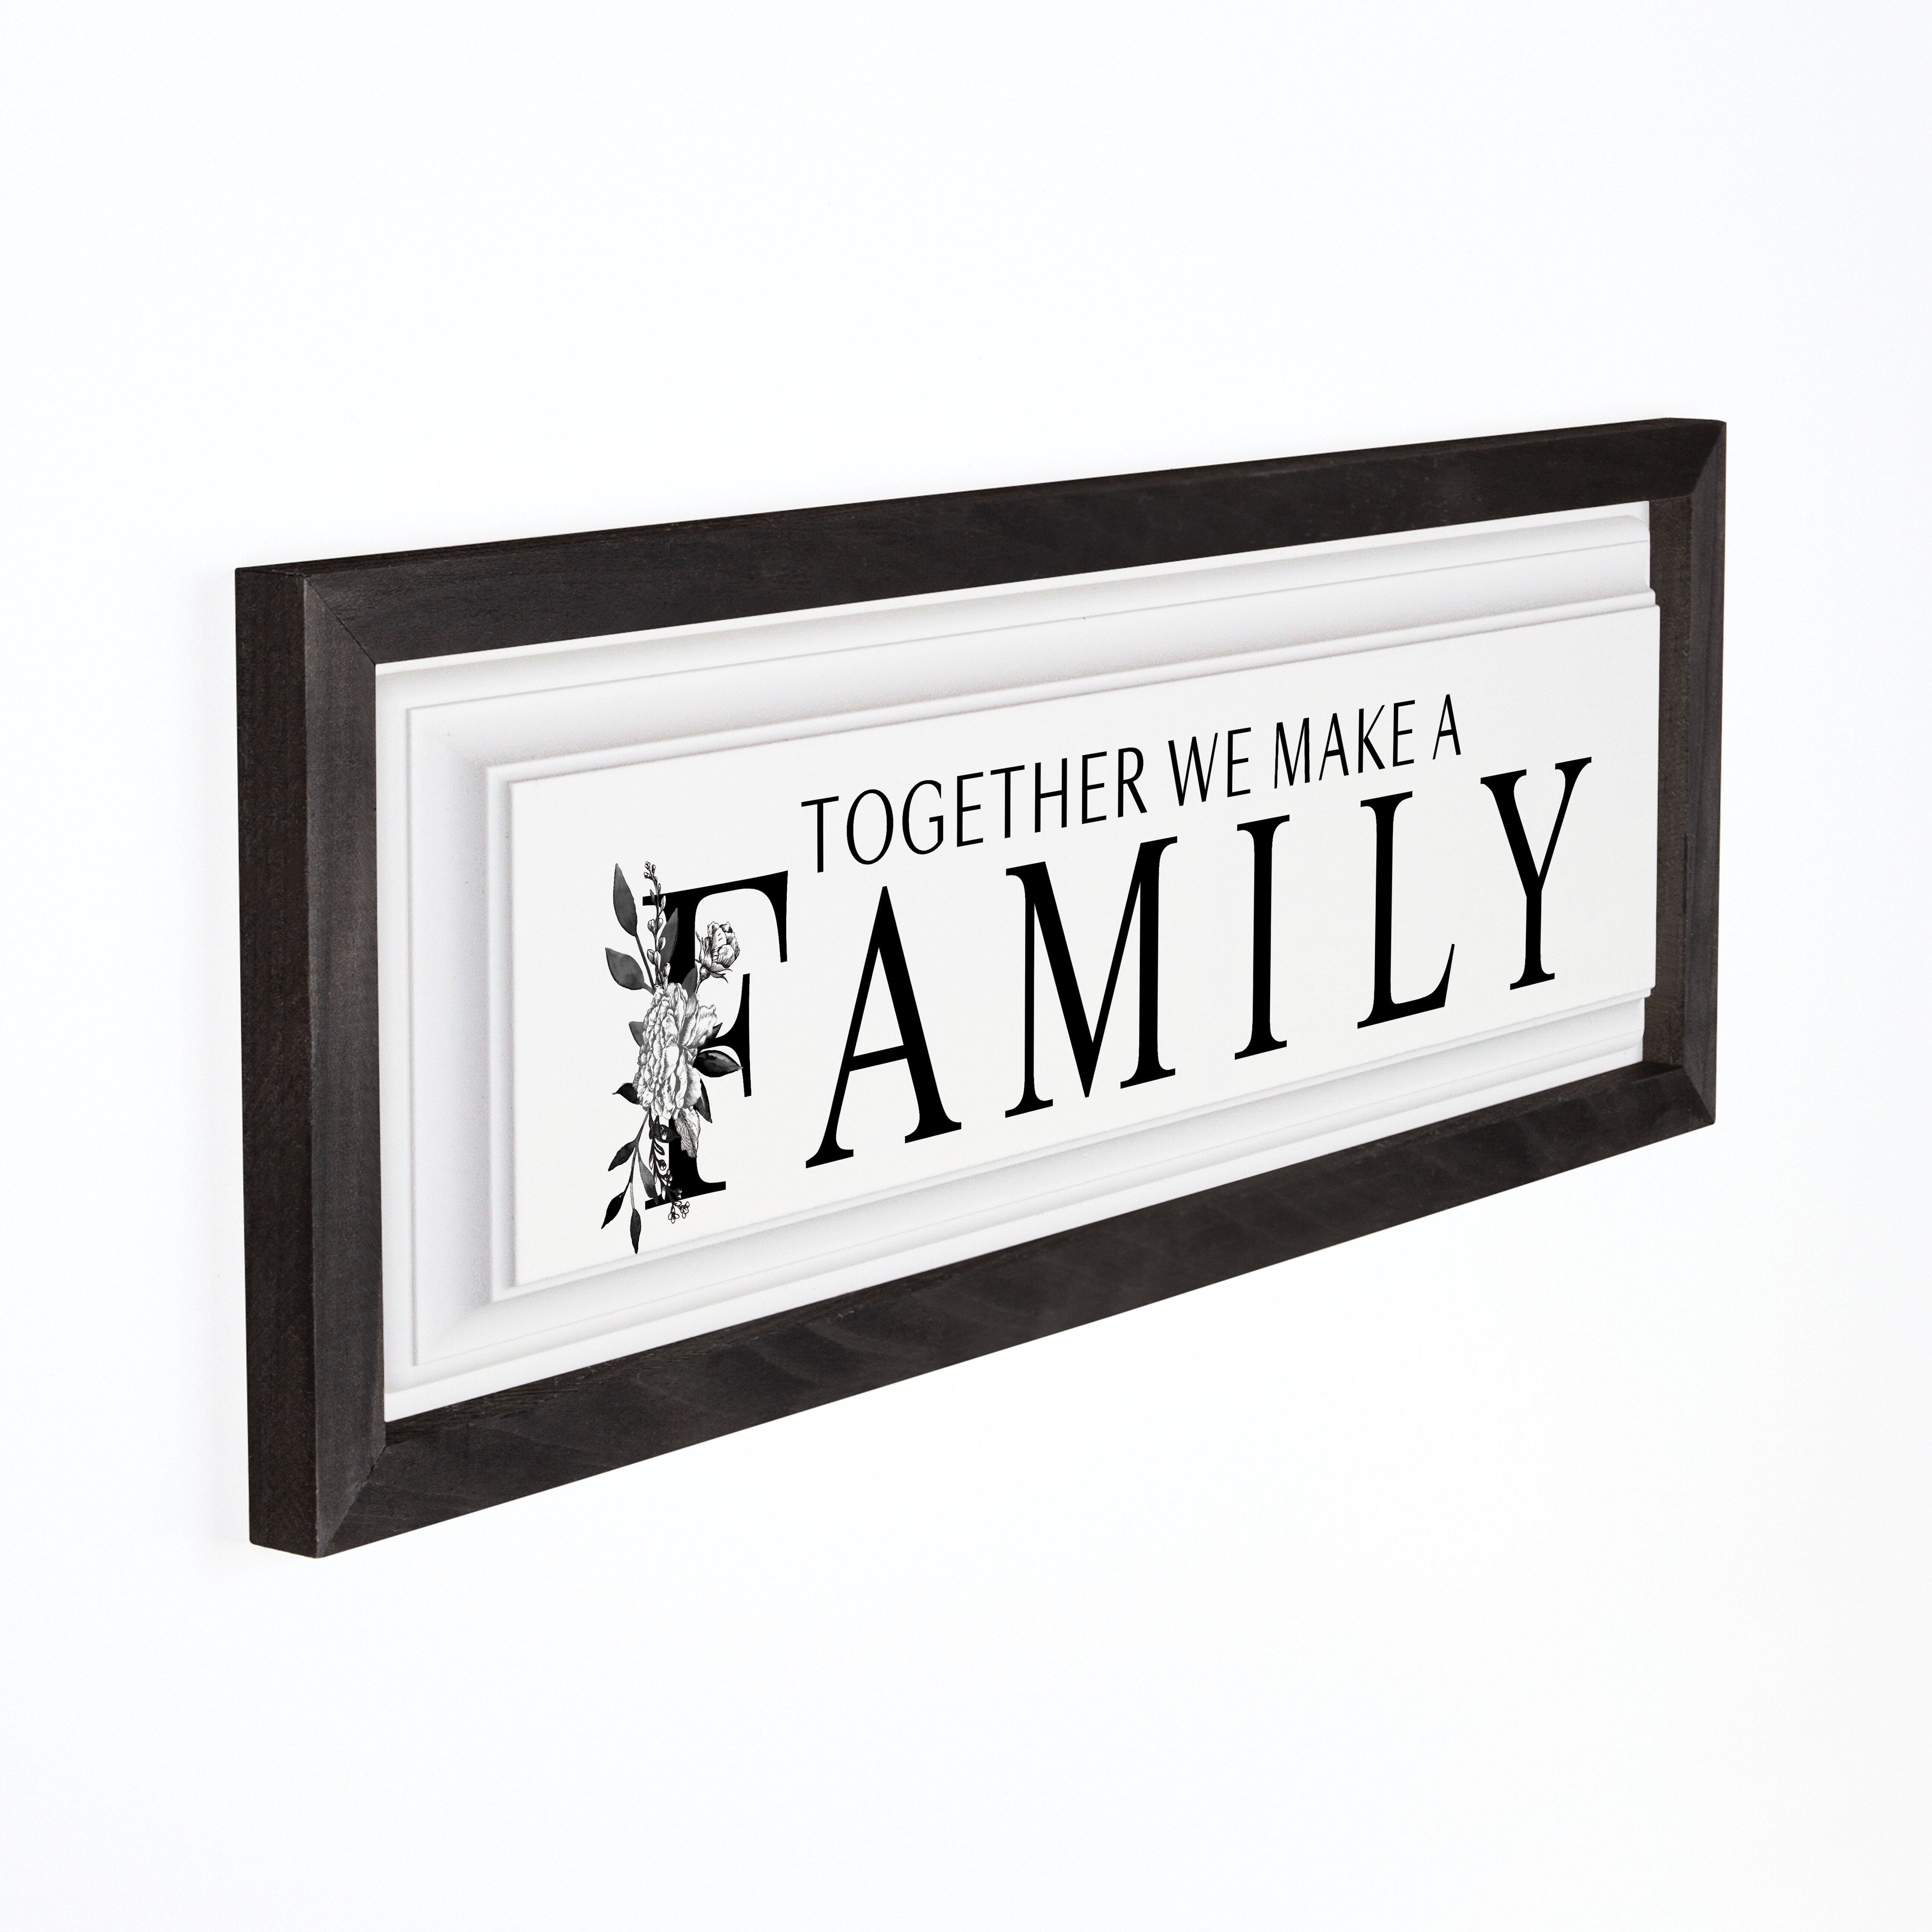 **Together We Make A Family Framed Art